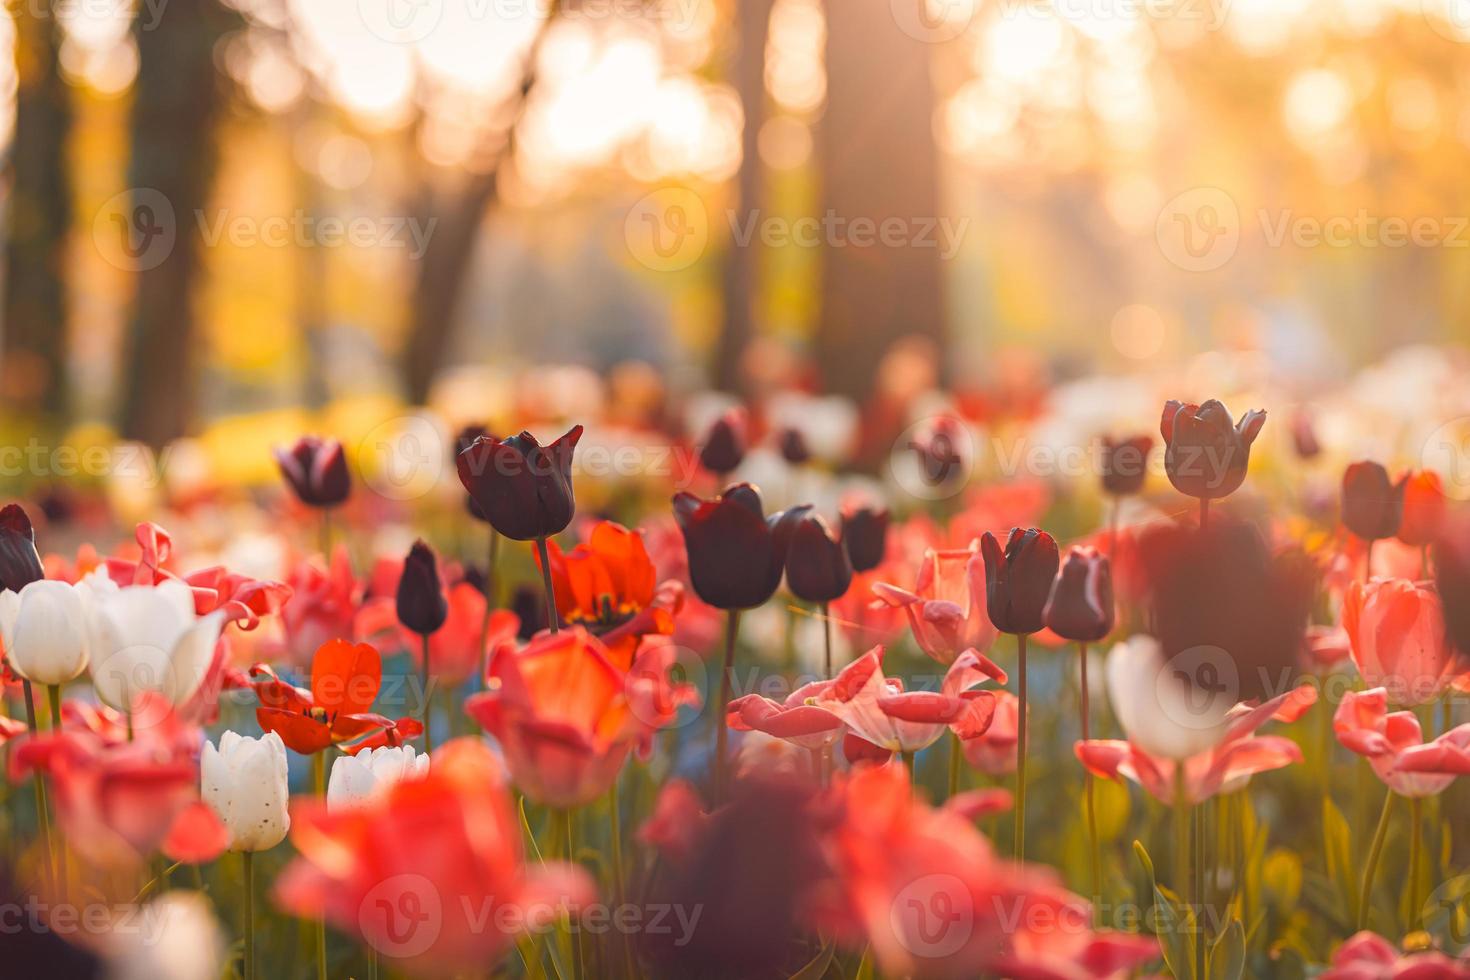 hermoso ramo de tulipanes rojos, rosados y blancos en la naturaleza primaveral para el diseño de postales y banner web. romántico y ama la naturaleza con un paisaje borroso de enfoque suave. naturaleza asombrosa, prado de la flora de la luz del sol foto